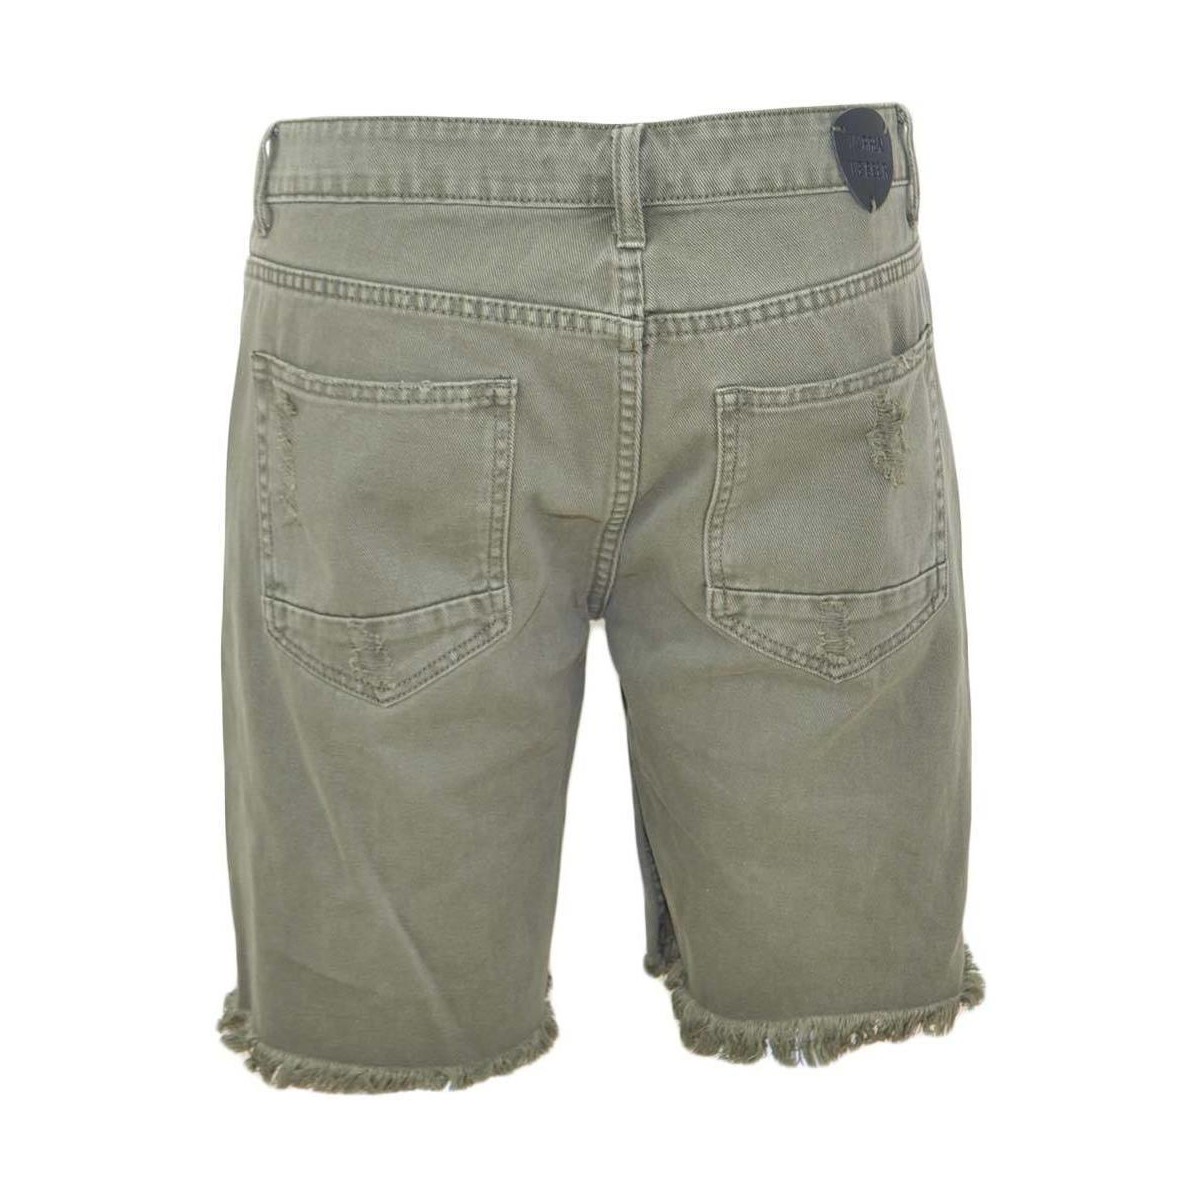 Abbigliamento Uomo Shorts / Bermuda Malu Shoes Pantoloni corti short uomo bermuda in jeans verde militare con Verde